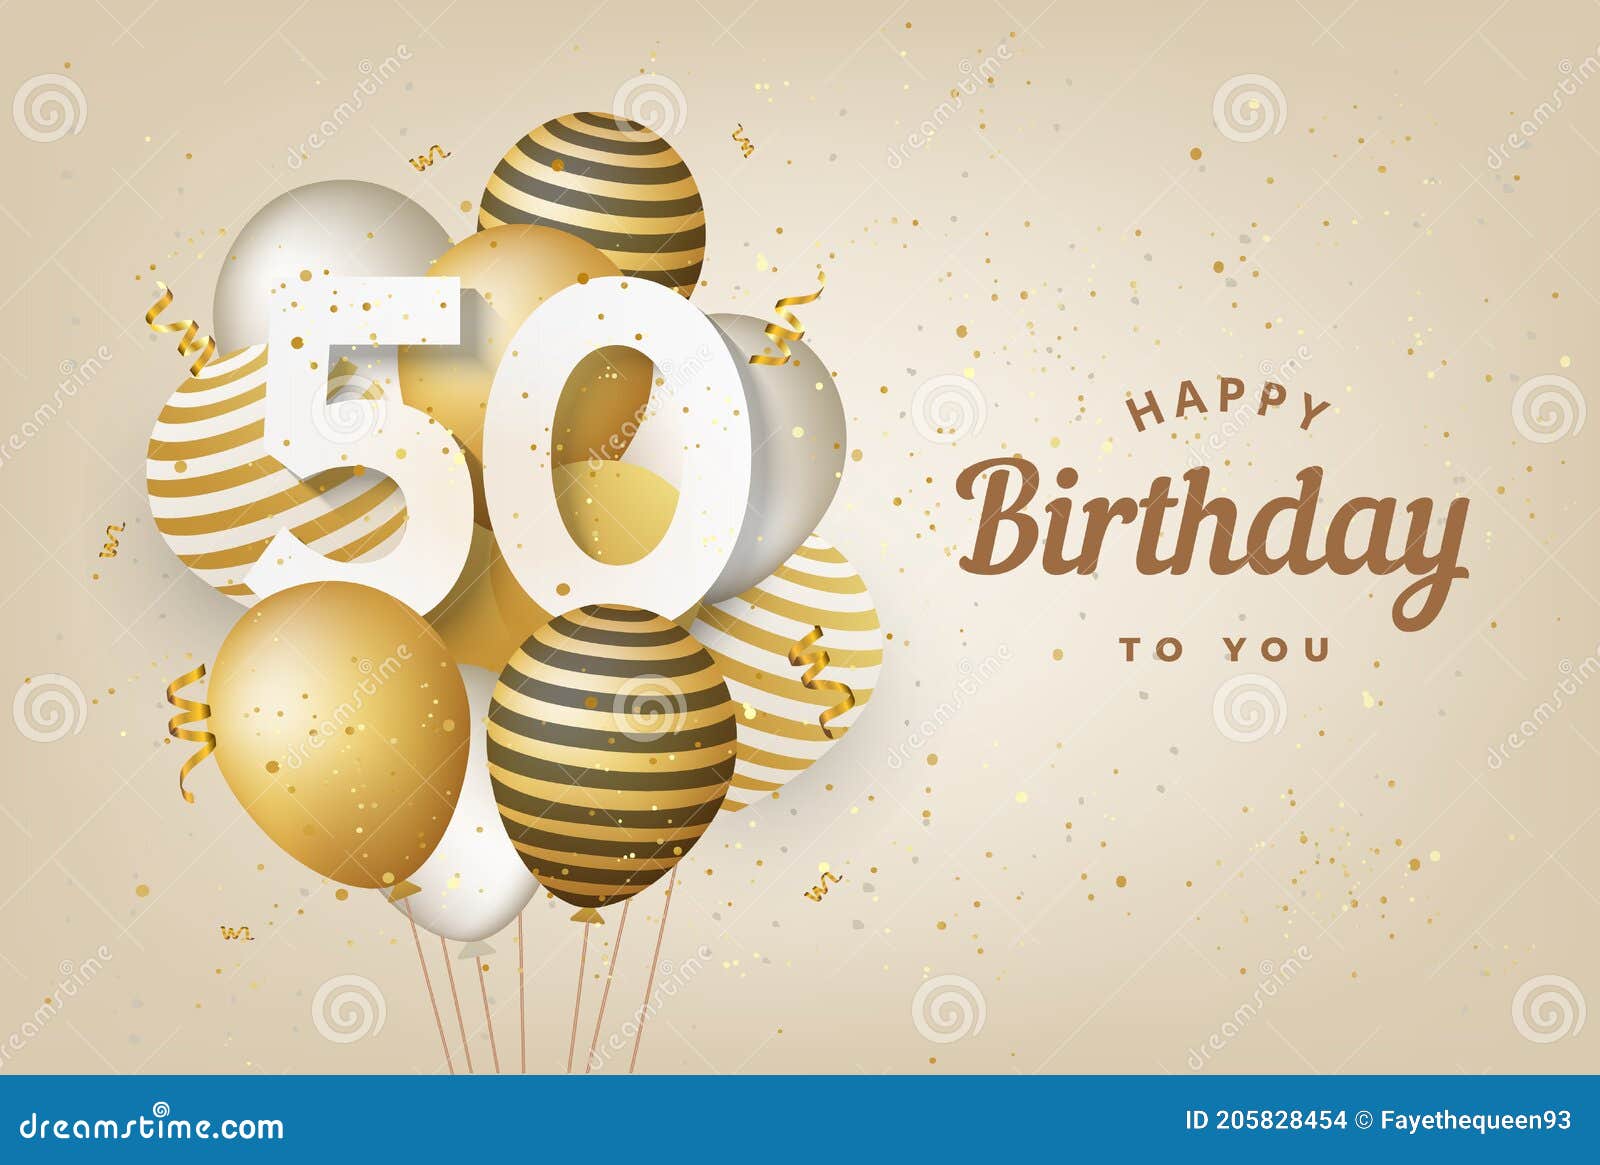 Một lời chúc mừng nhân dịp sinh nhật 50 tuổi được gửi đến bạn và được trang trí với những bóng bay vàng rực rỡ. Cùng xem chi tiết về thiệp chúc mừng này để cảm nhận sự ấm áp và ý nghĩa của lời chúc từ trái tim.